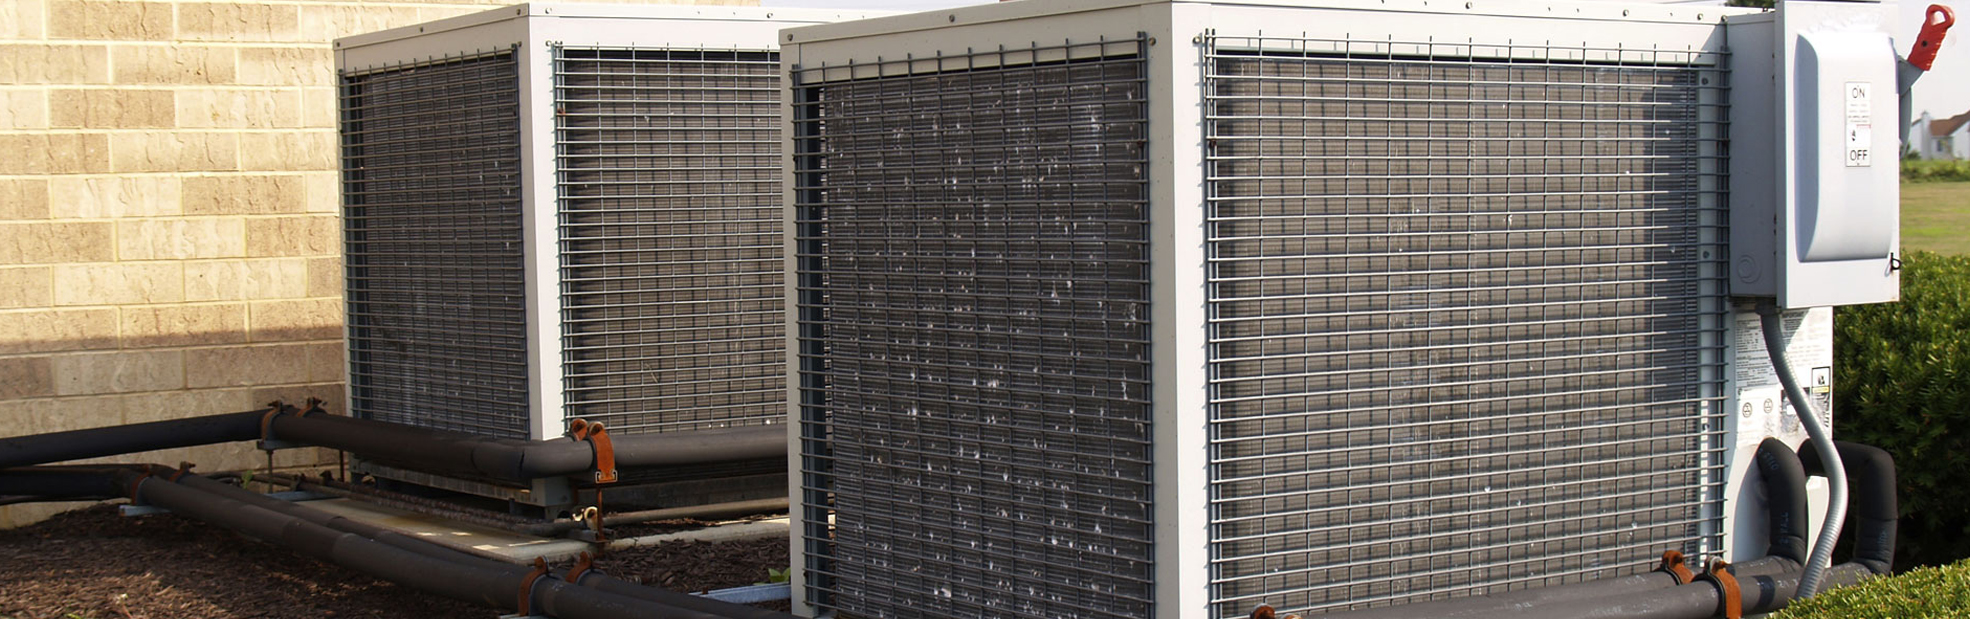 Mesa Air Conditioning and Heating Repair